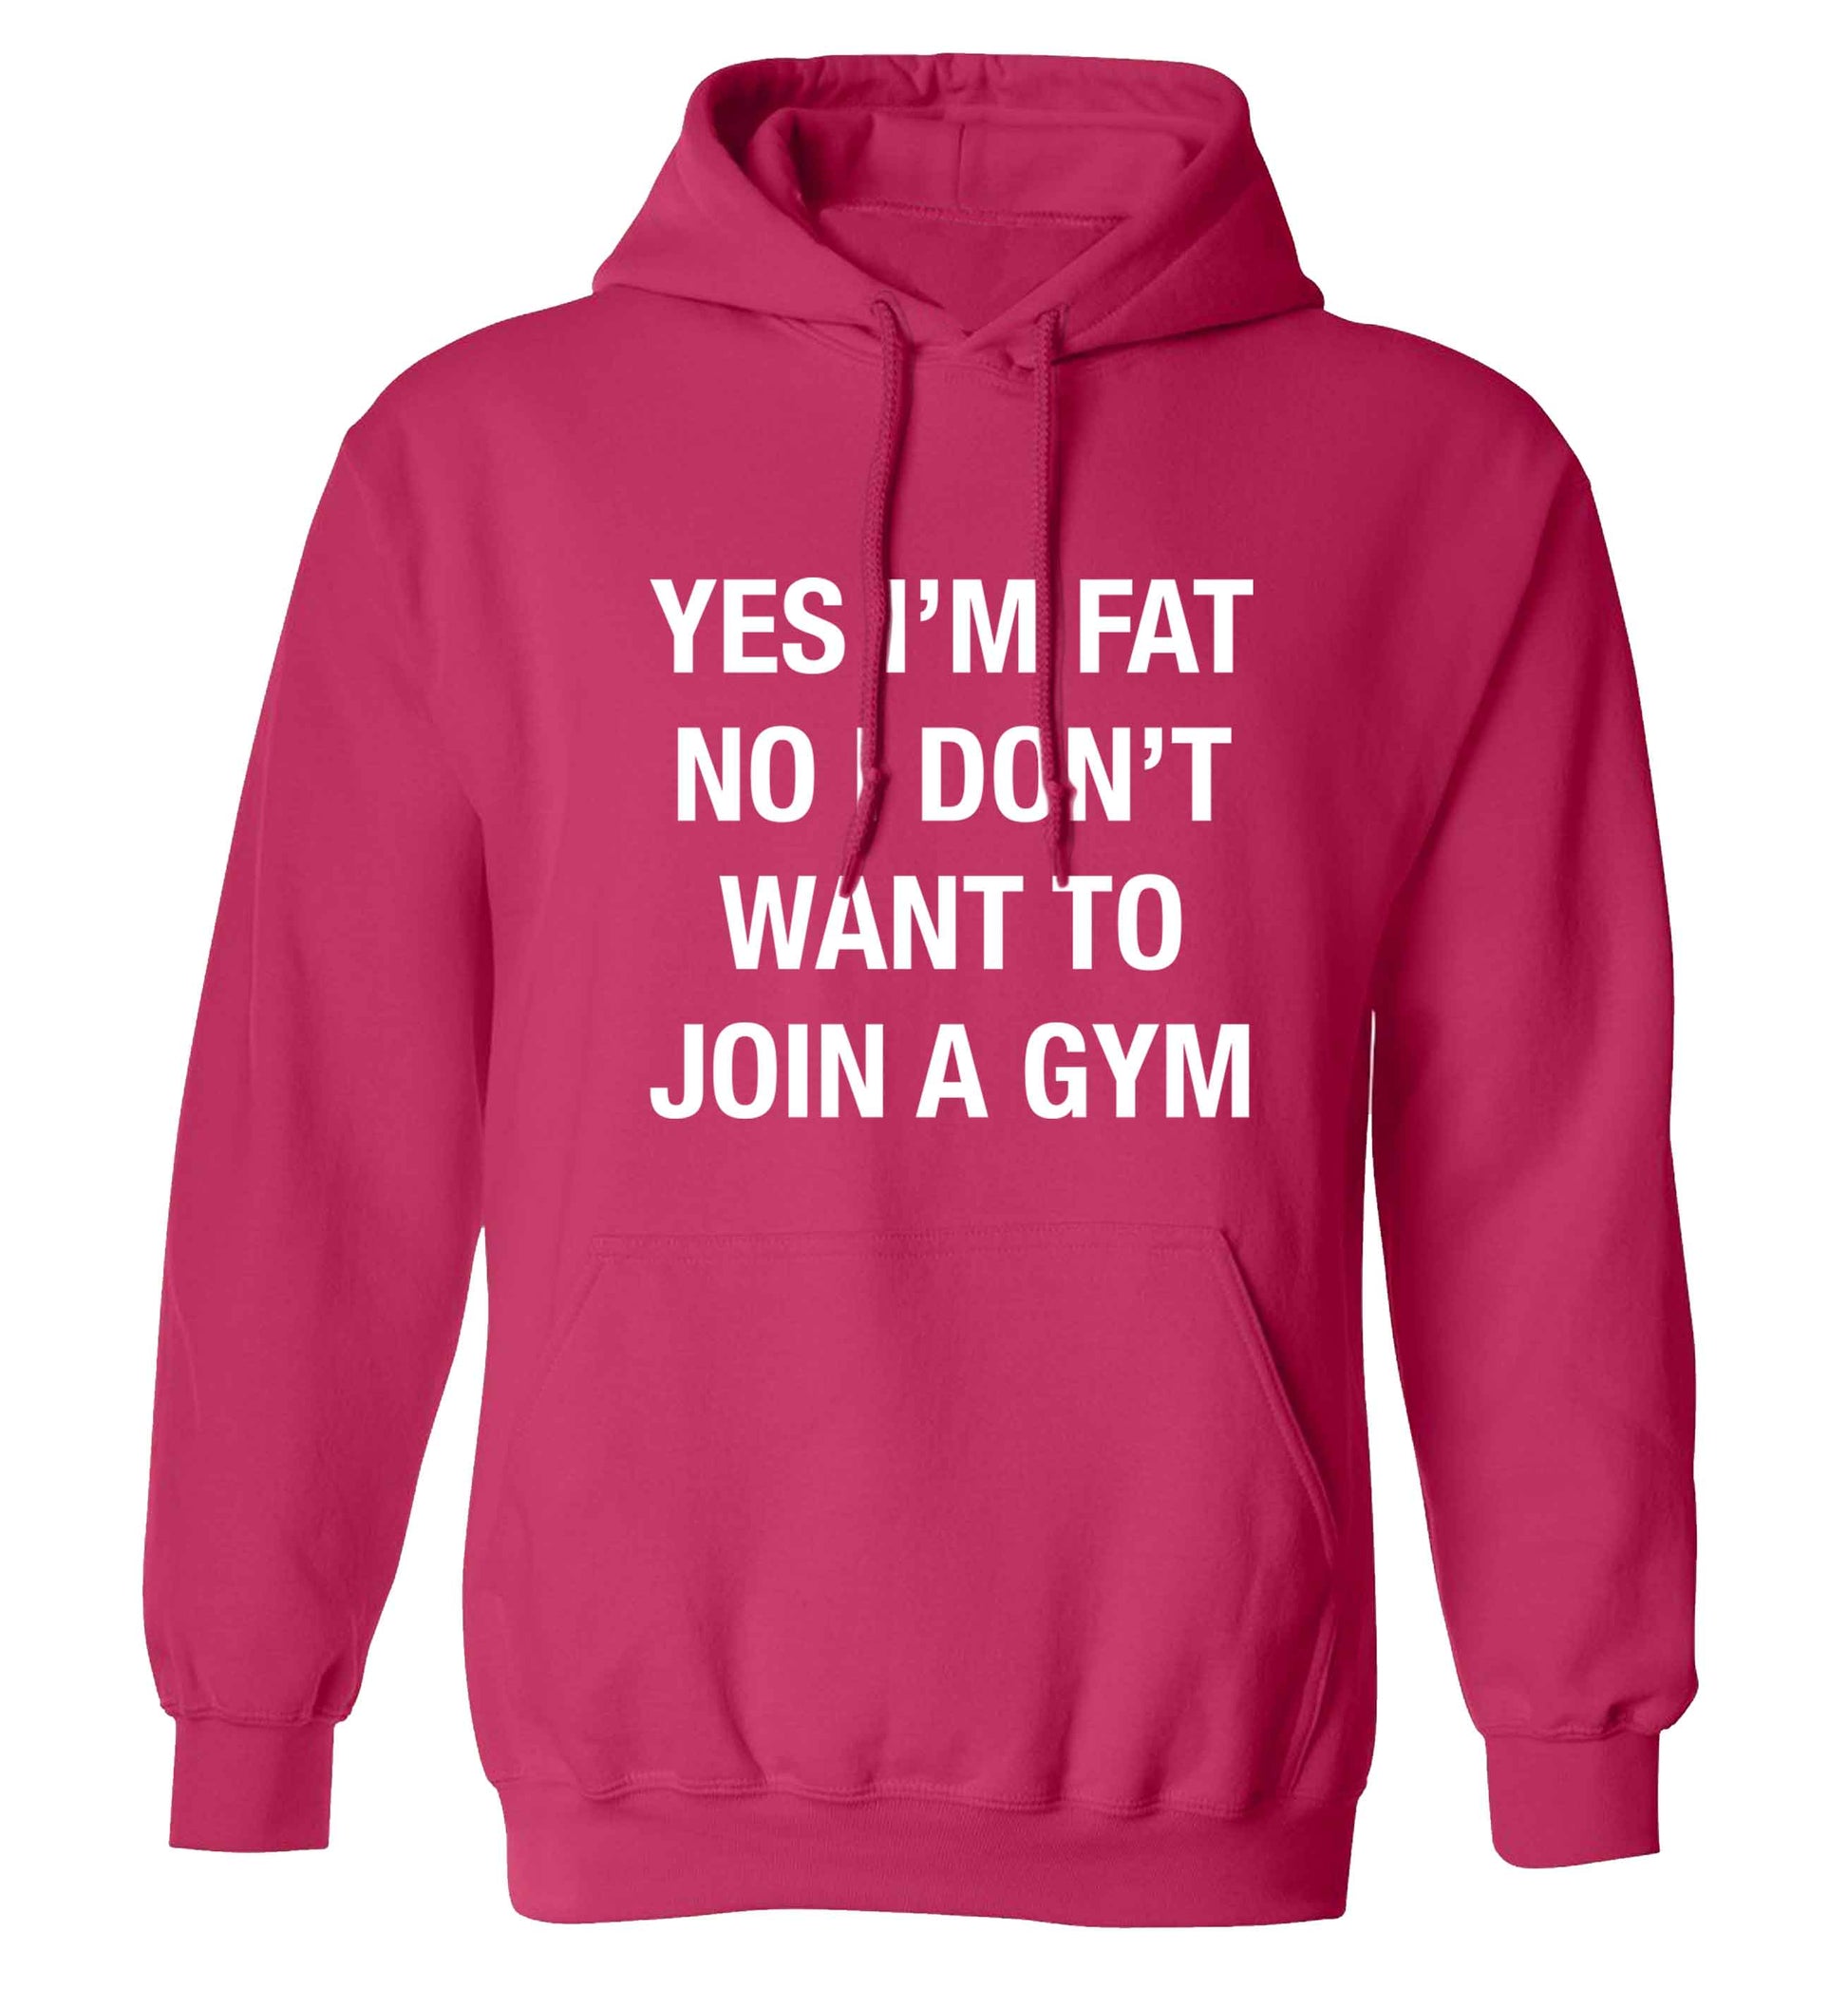 Yes I'm fat, no I don't want to go to the gym adults unisex pink hoodie 2XL